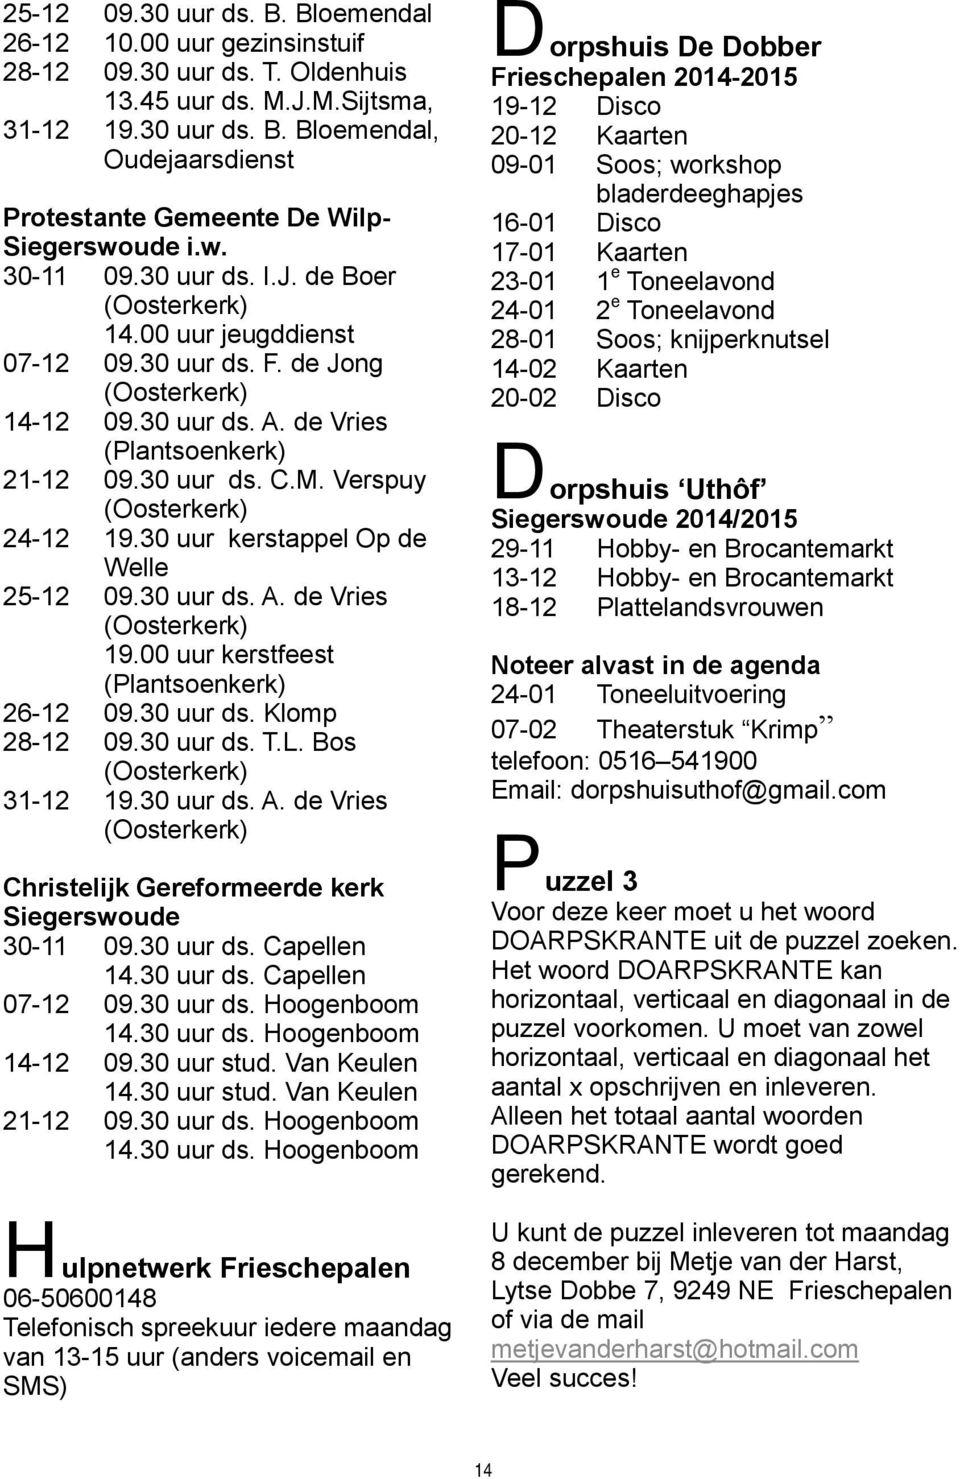 Verspuy (Oosterkerk) 24-12 19.30 uur kerstappel Op de Welle 25-12 09.30 uur ds. A. de Vries (Oosterkerk) 19.00 uur kerstfeest (Plantsoenkerk) 26-12 09.30 uur ds. Klomp 28-12 09.30 uur ds. T.L.